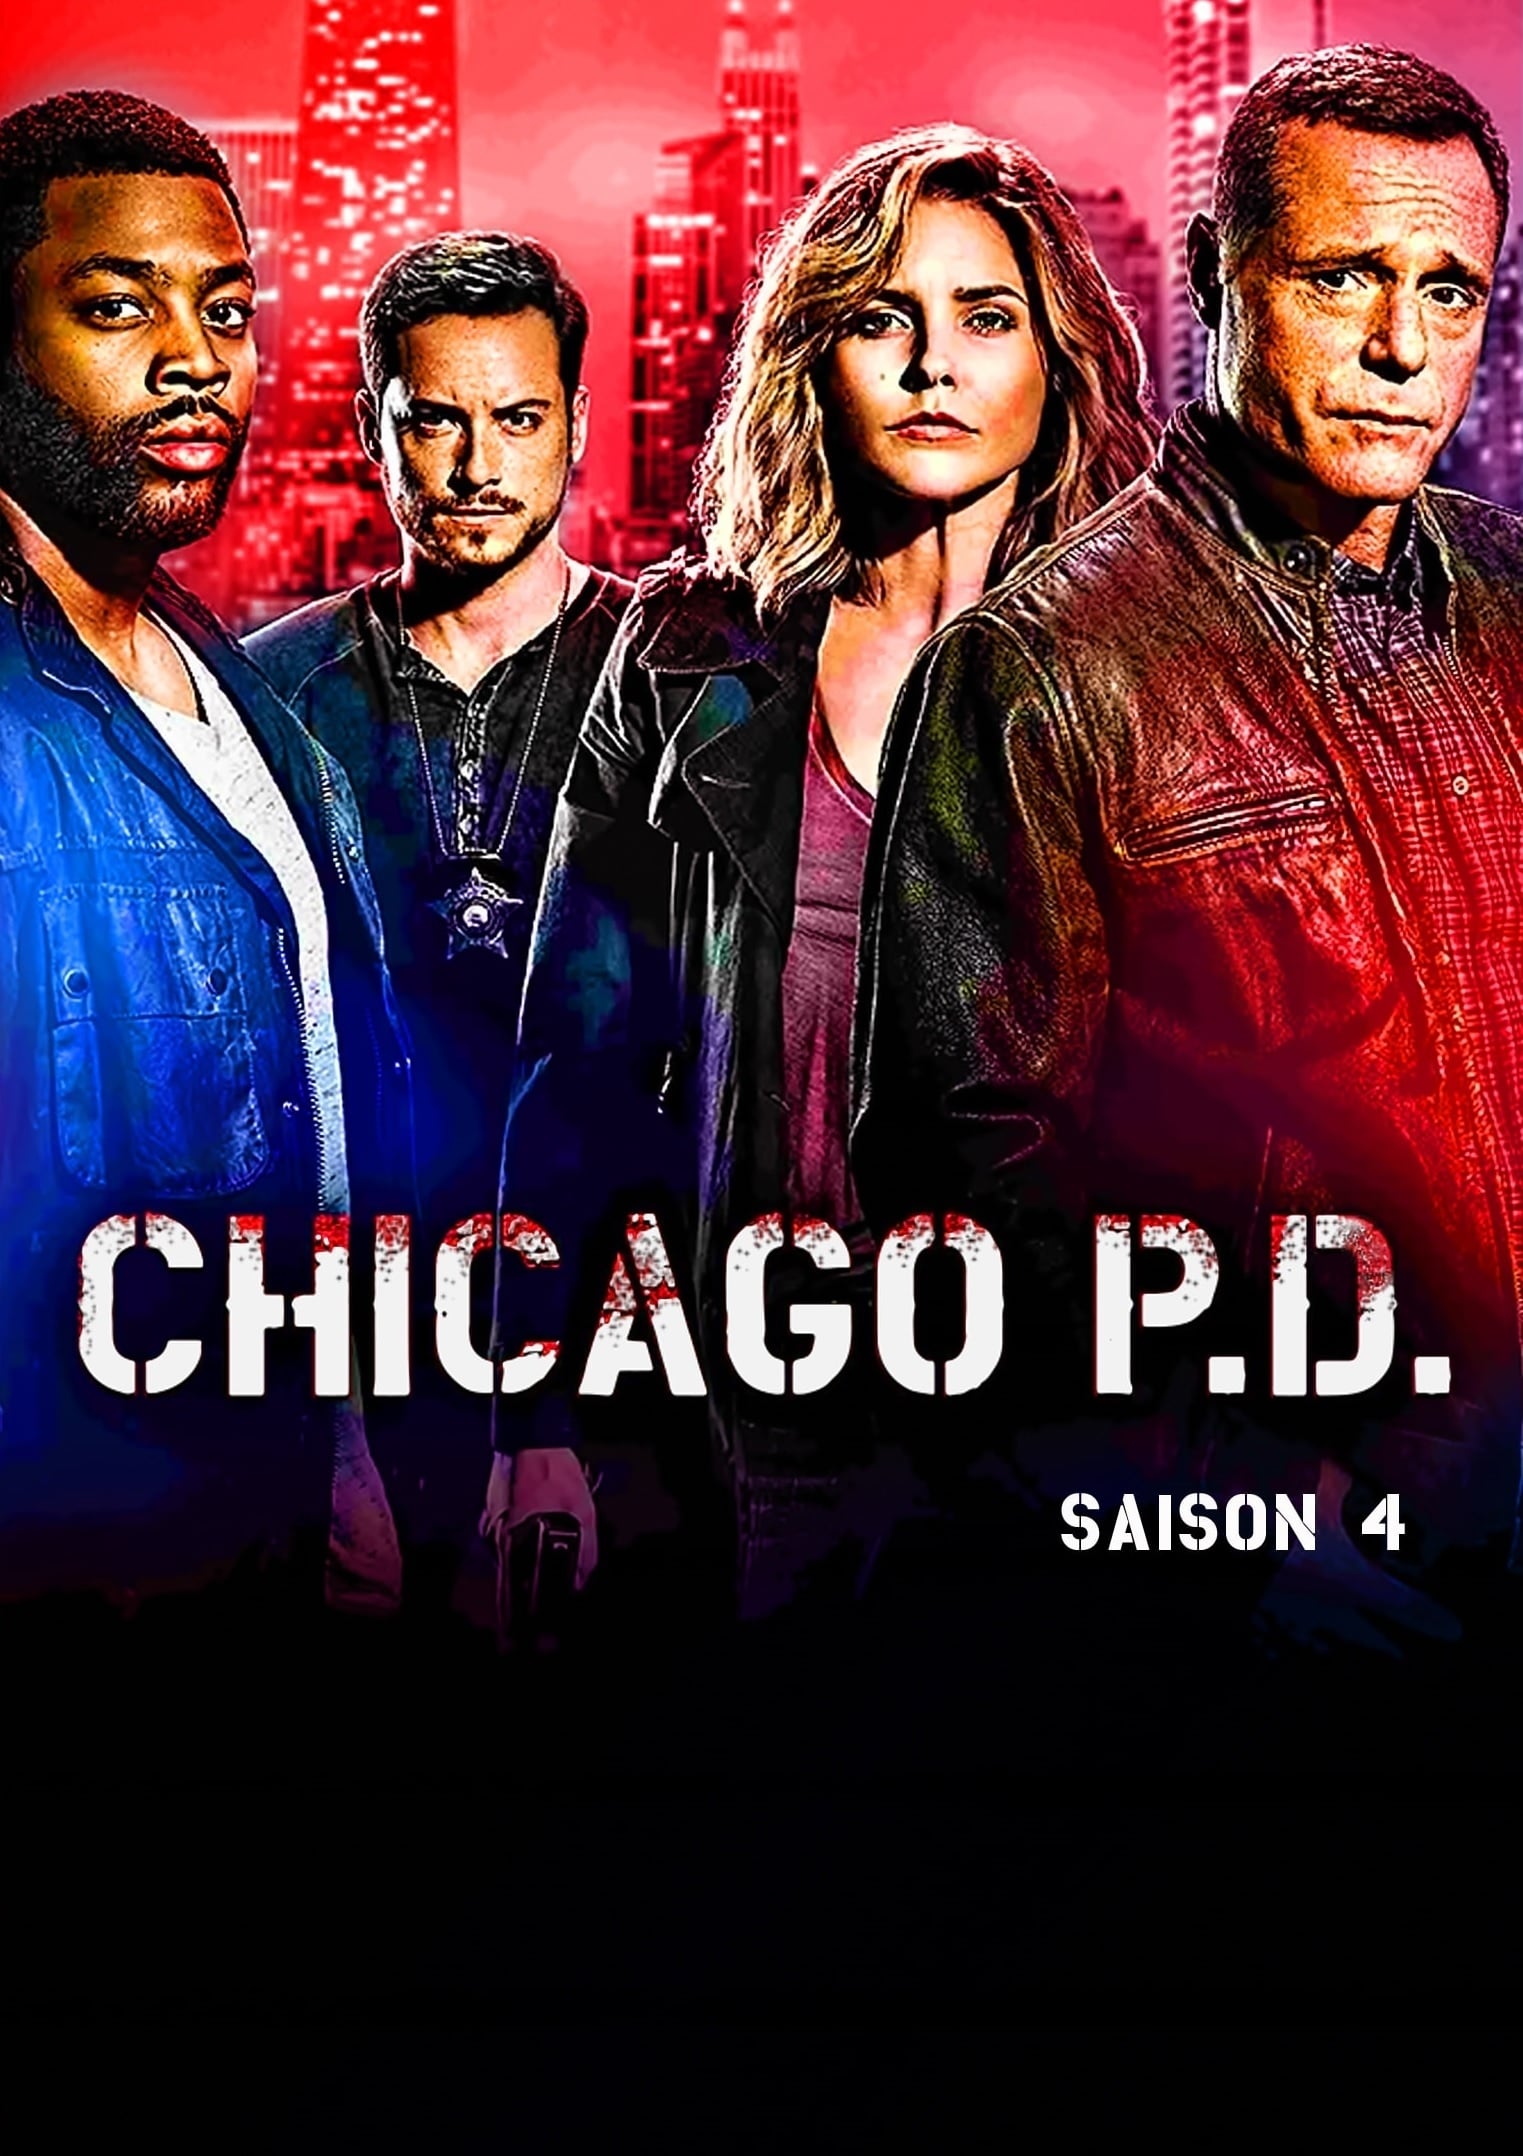 Chicago Police Department Saison 4 en Streaming